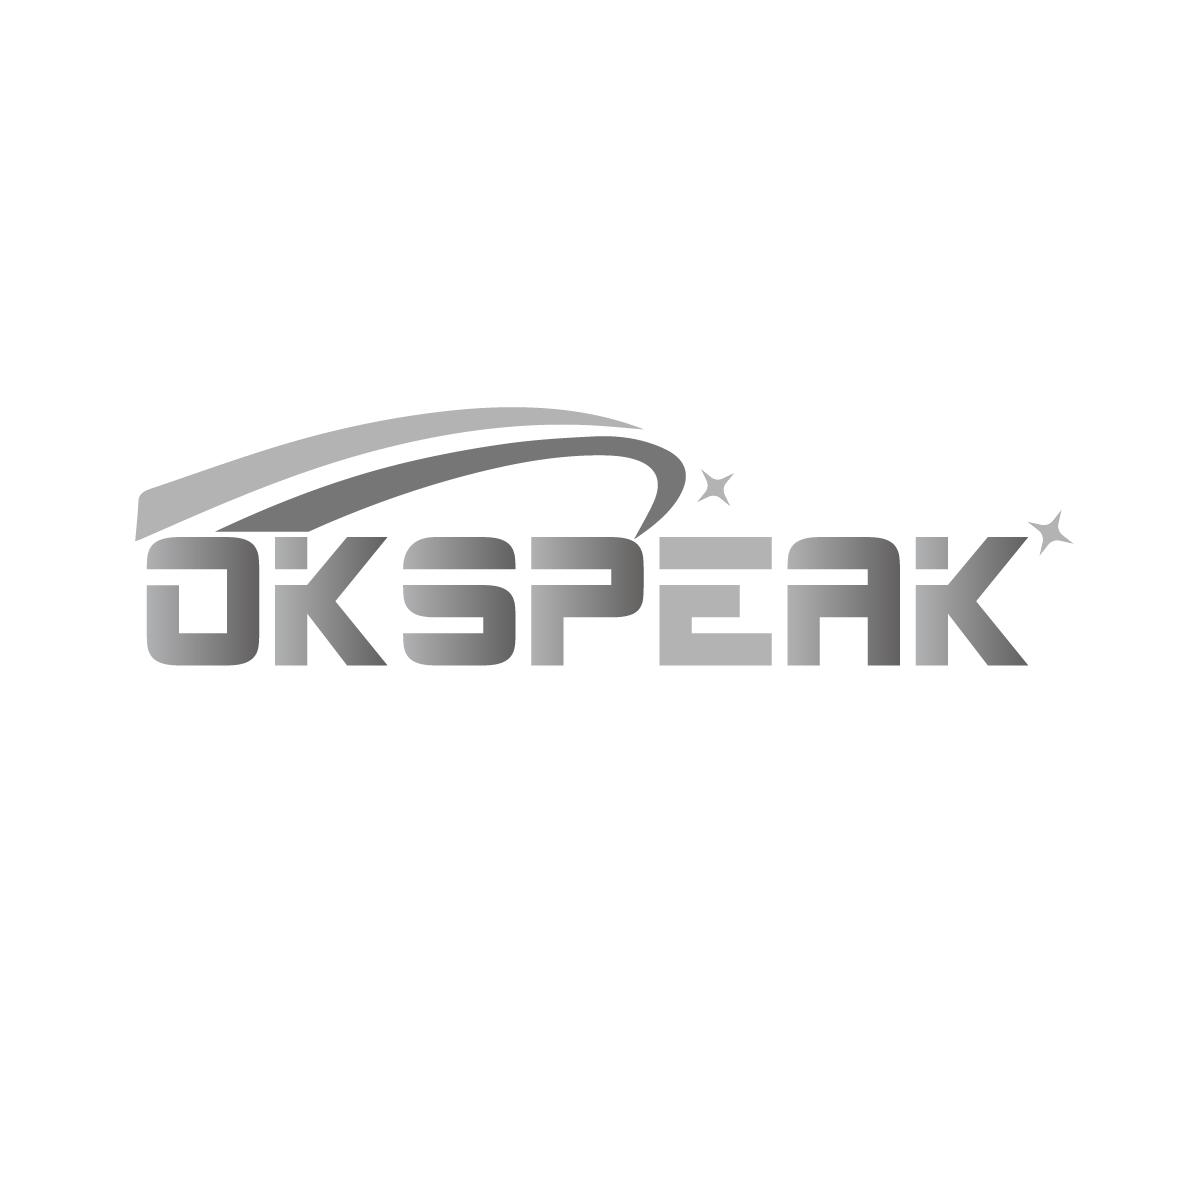 OKSPEAK